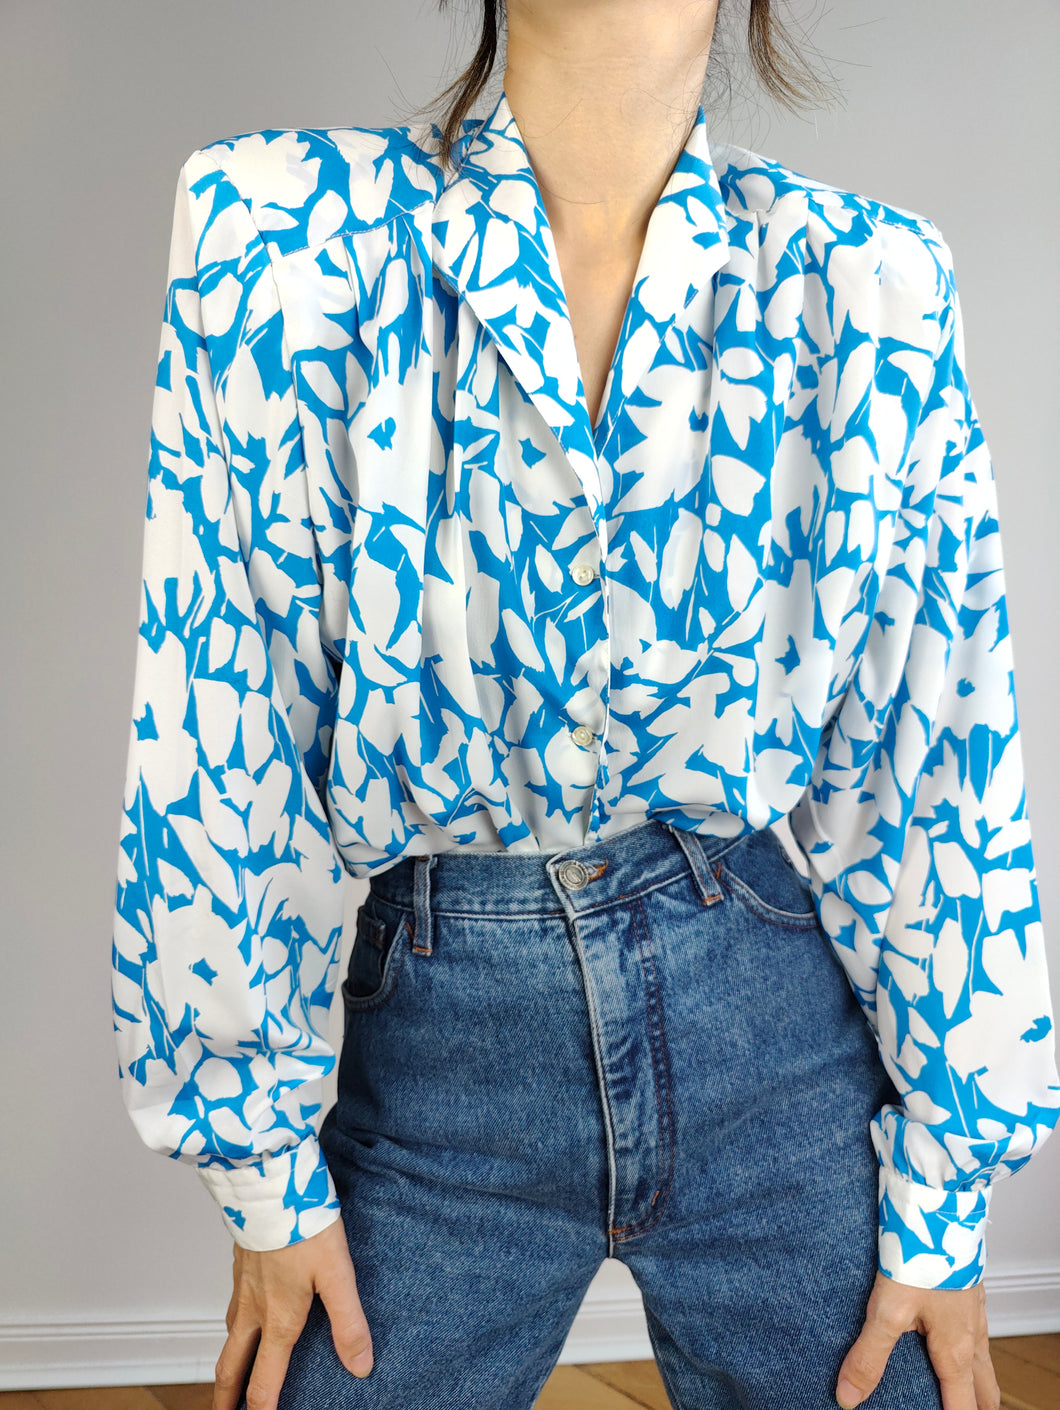 Die blumige Bluse mit weiß-blauem Muster | Vintage-Blumendruck, große Ballonärmel, feminine Bluse ML